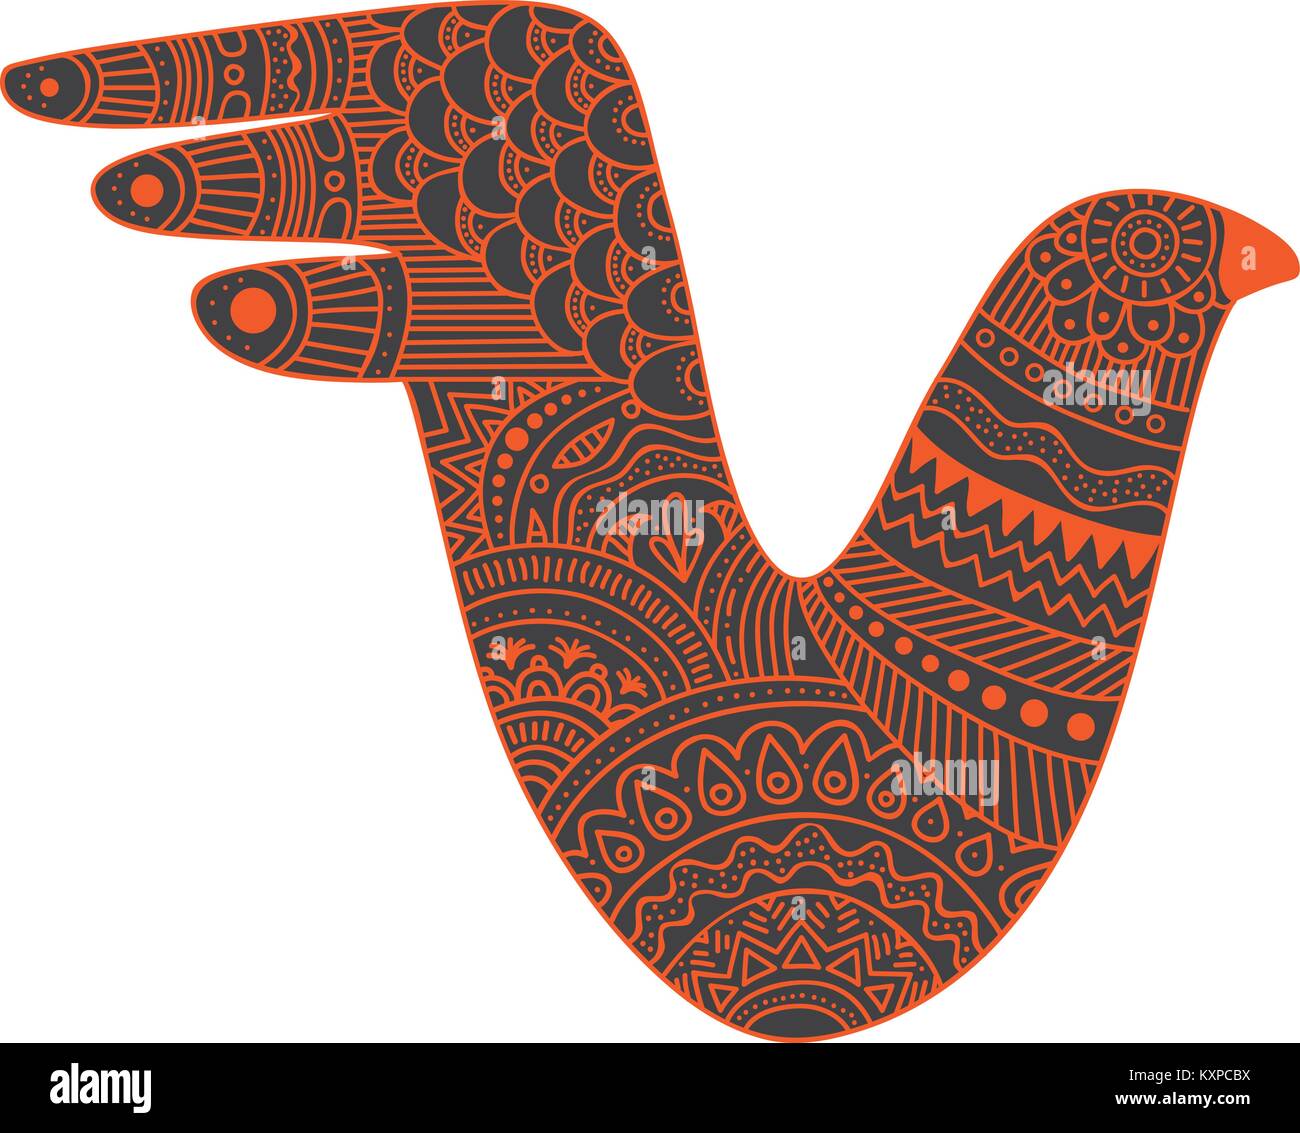 Creature mistiche bird illustrazione vettoriale con ornati in stile messicano pattern Illustrazione Vettoriale